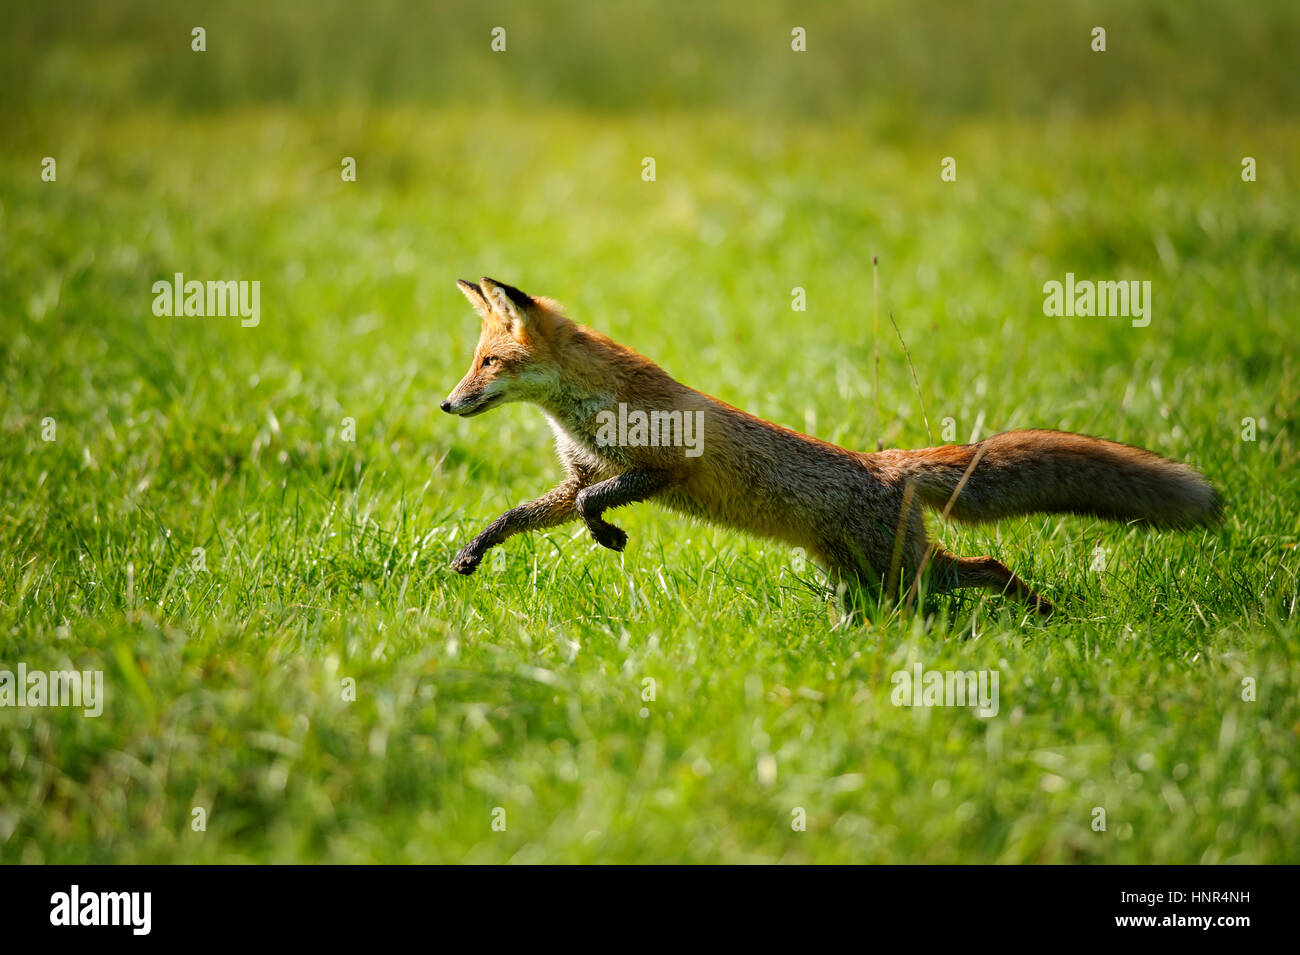 Rotfuchs springen und Runing im grünen Rasen von Seite anzeigen Stockfoto